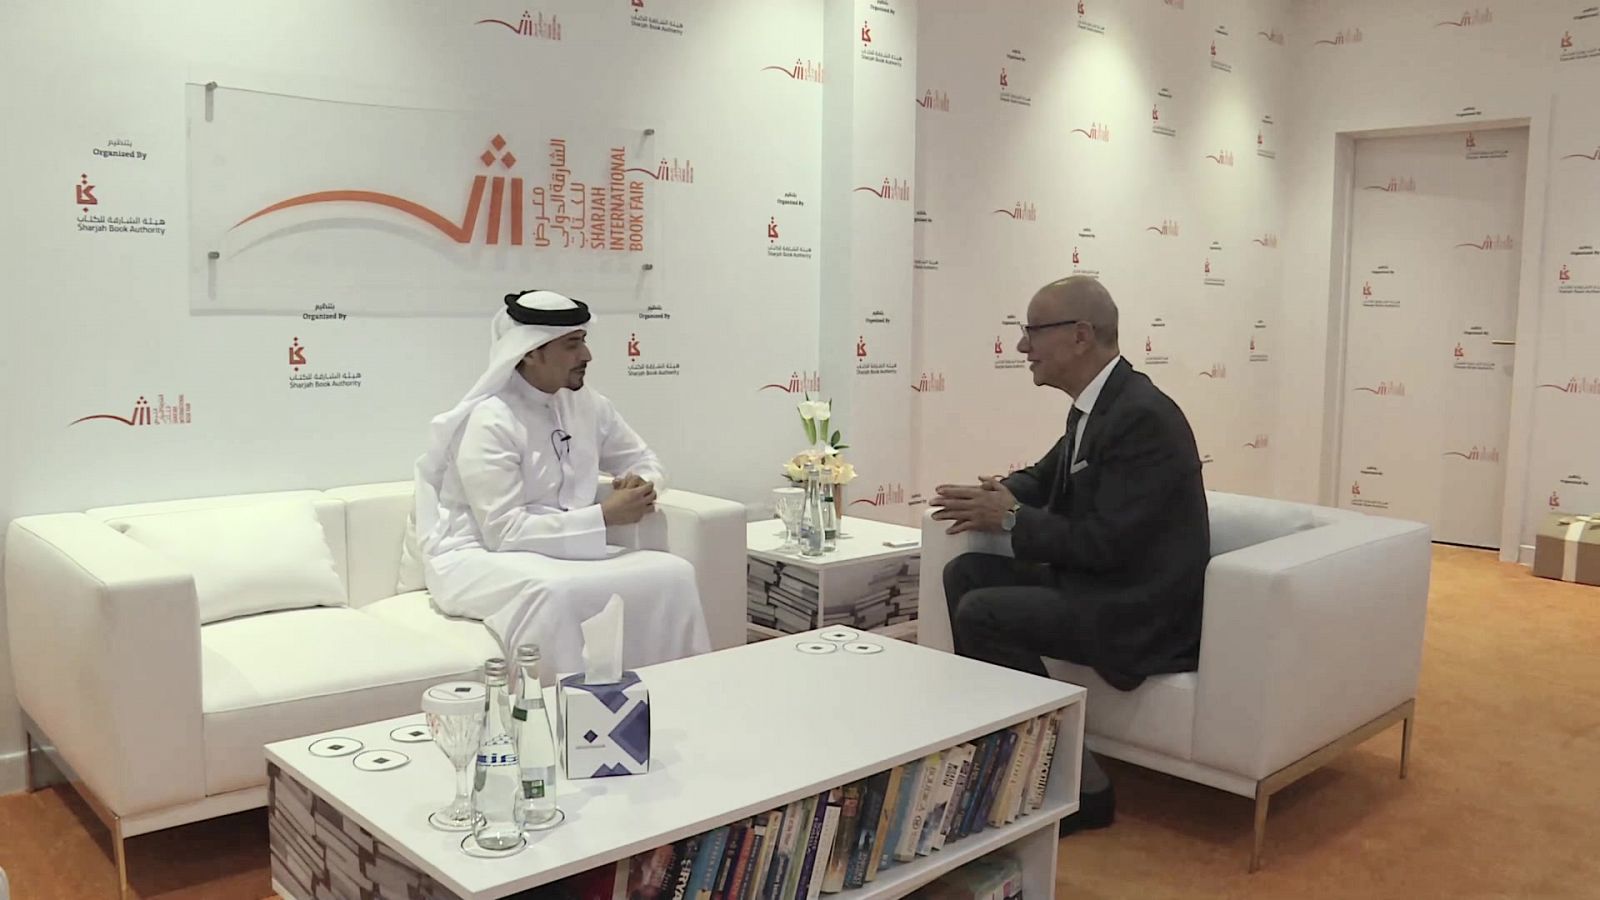 Medina en TVE - Salón internacional del libro Sharjah 2